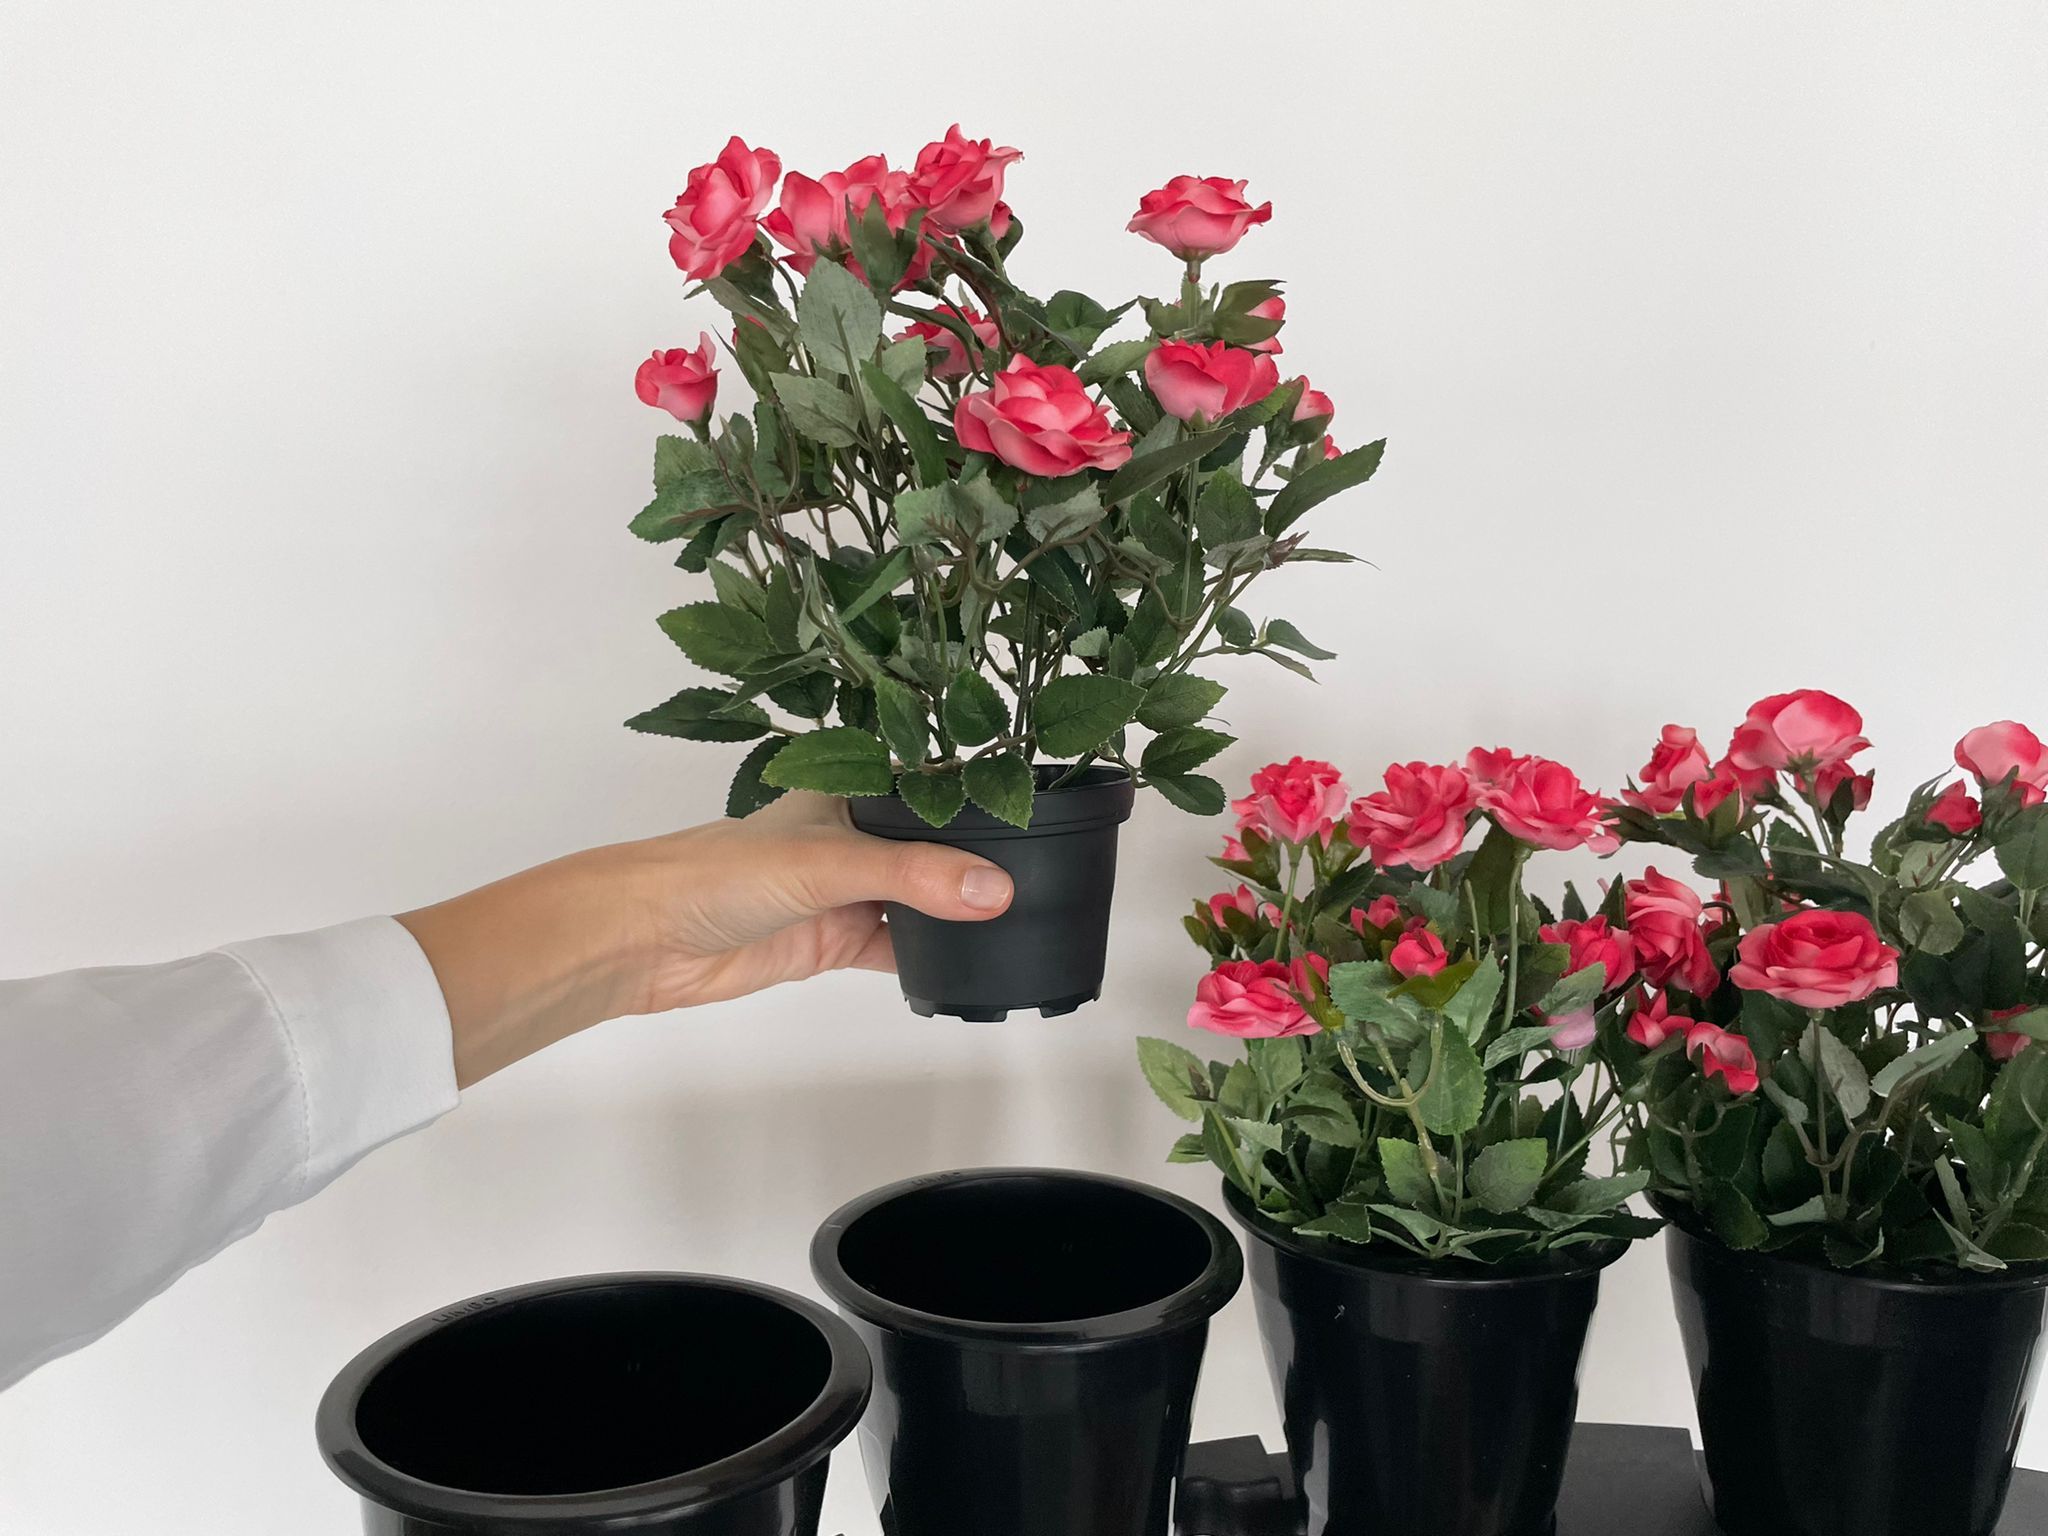 ¿Sabías que cada flor cortada podría emitir hasta 3 kg de CO2?